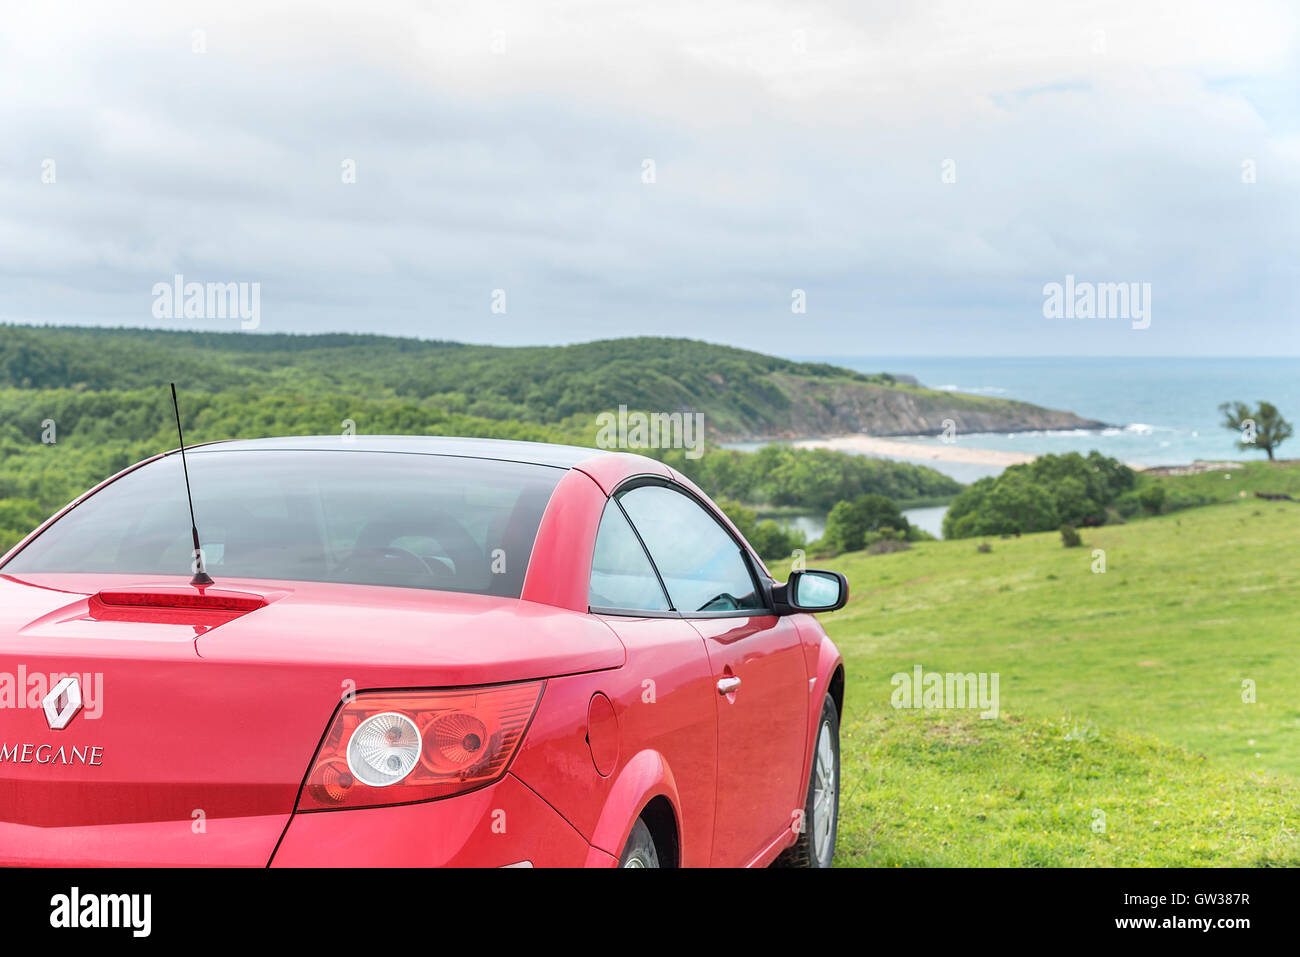 AHTOPOL, Bulgaria - 5 maggio: Rosso auto Renault Megane Cabriolet sulla wild mare di sabbia spiaggia, il 5 di Maggio di 2016 in Ahtopol, Bulgaria. Foto Stock